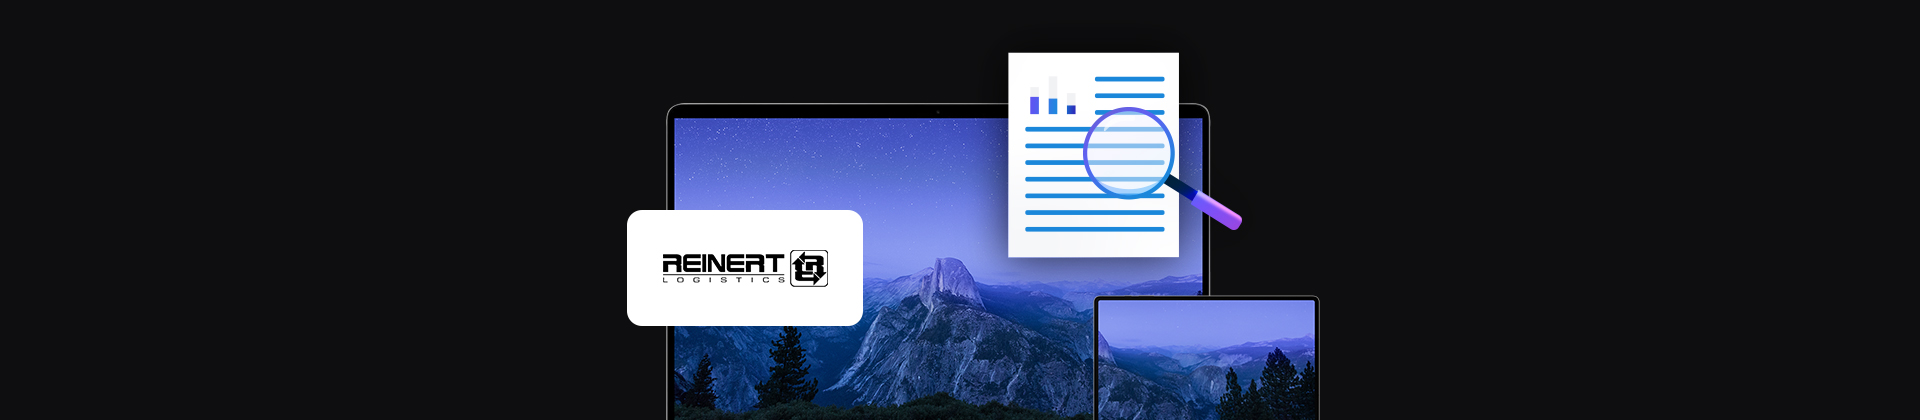 banner z logo firmy Reinert Logistics, dwa urządzenia mobilne laptop i tablet, ikona dokumentu z lupą